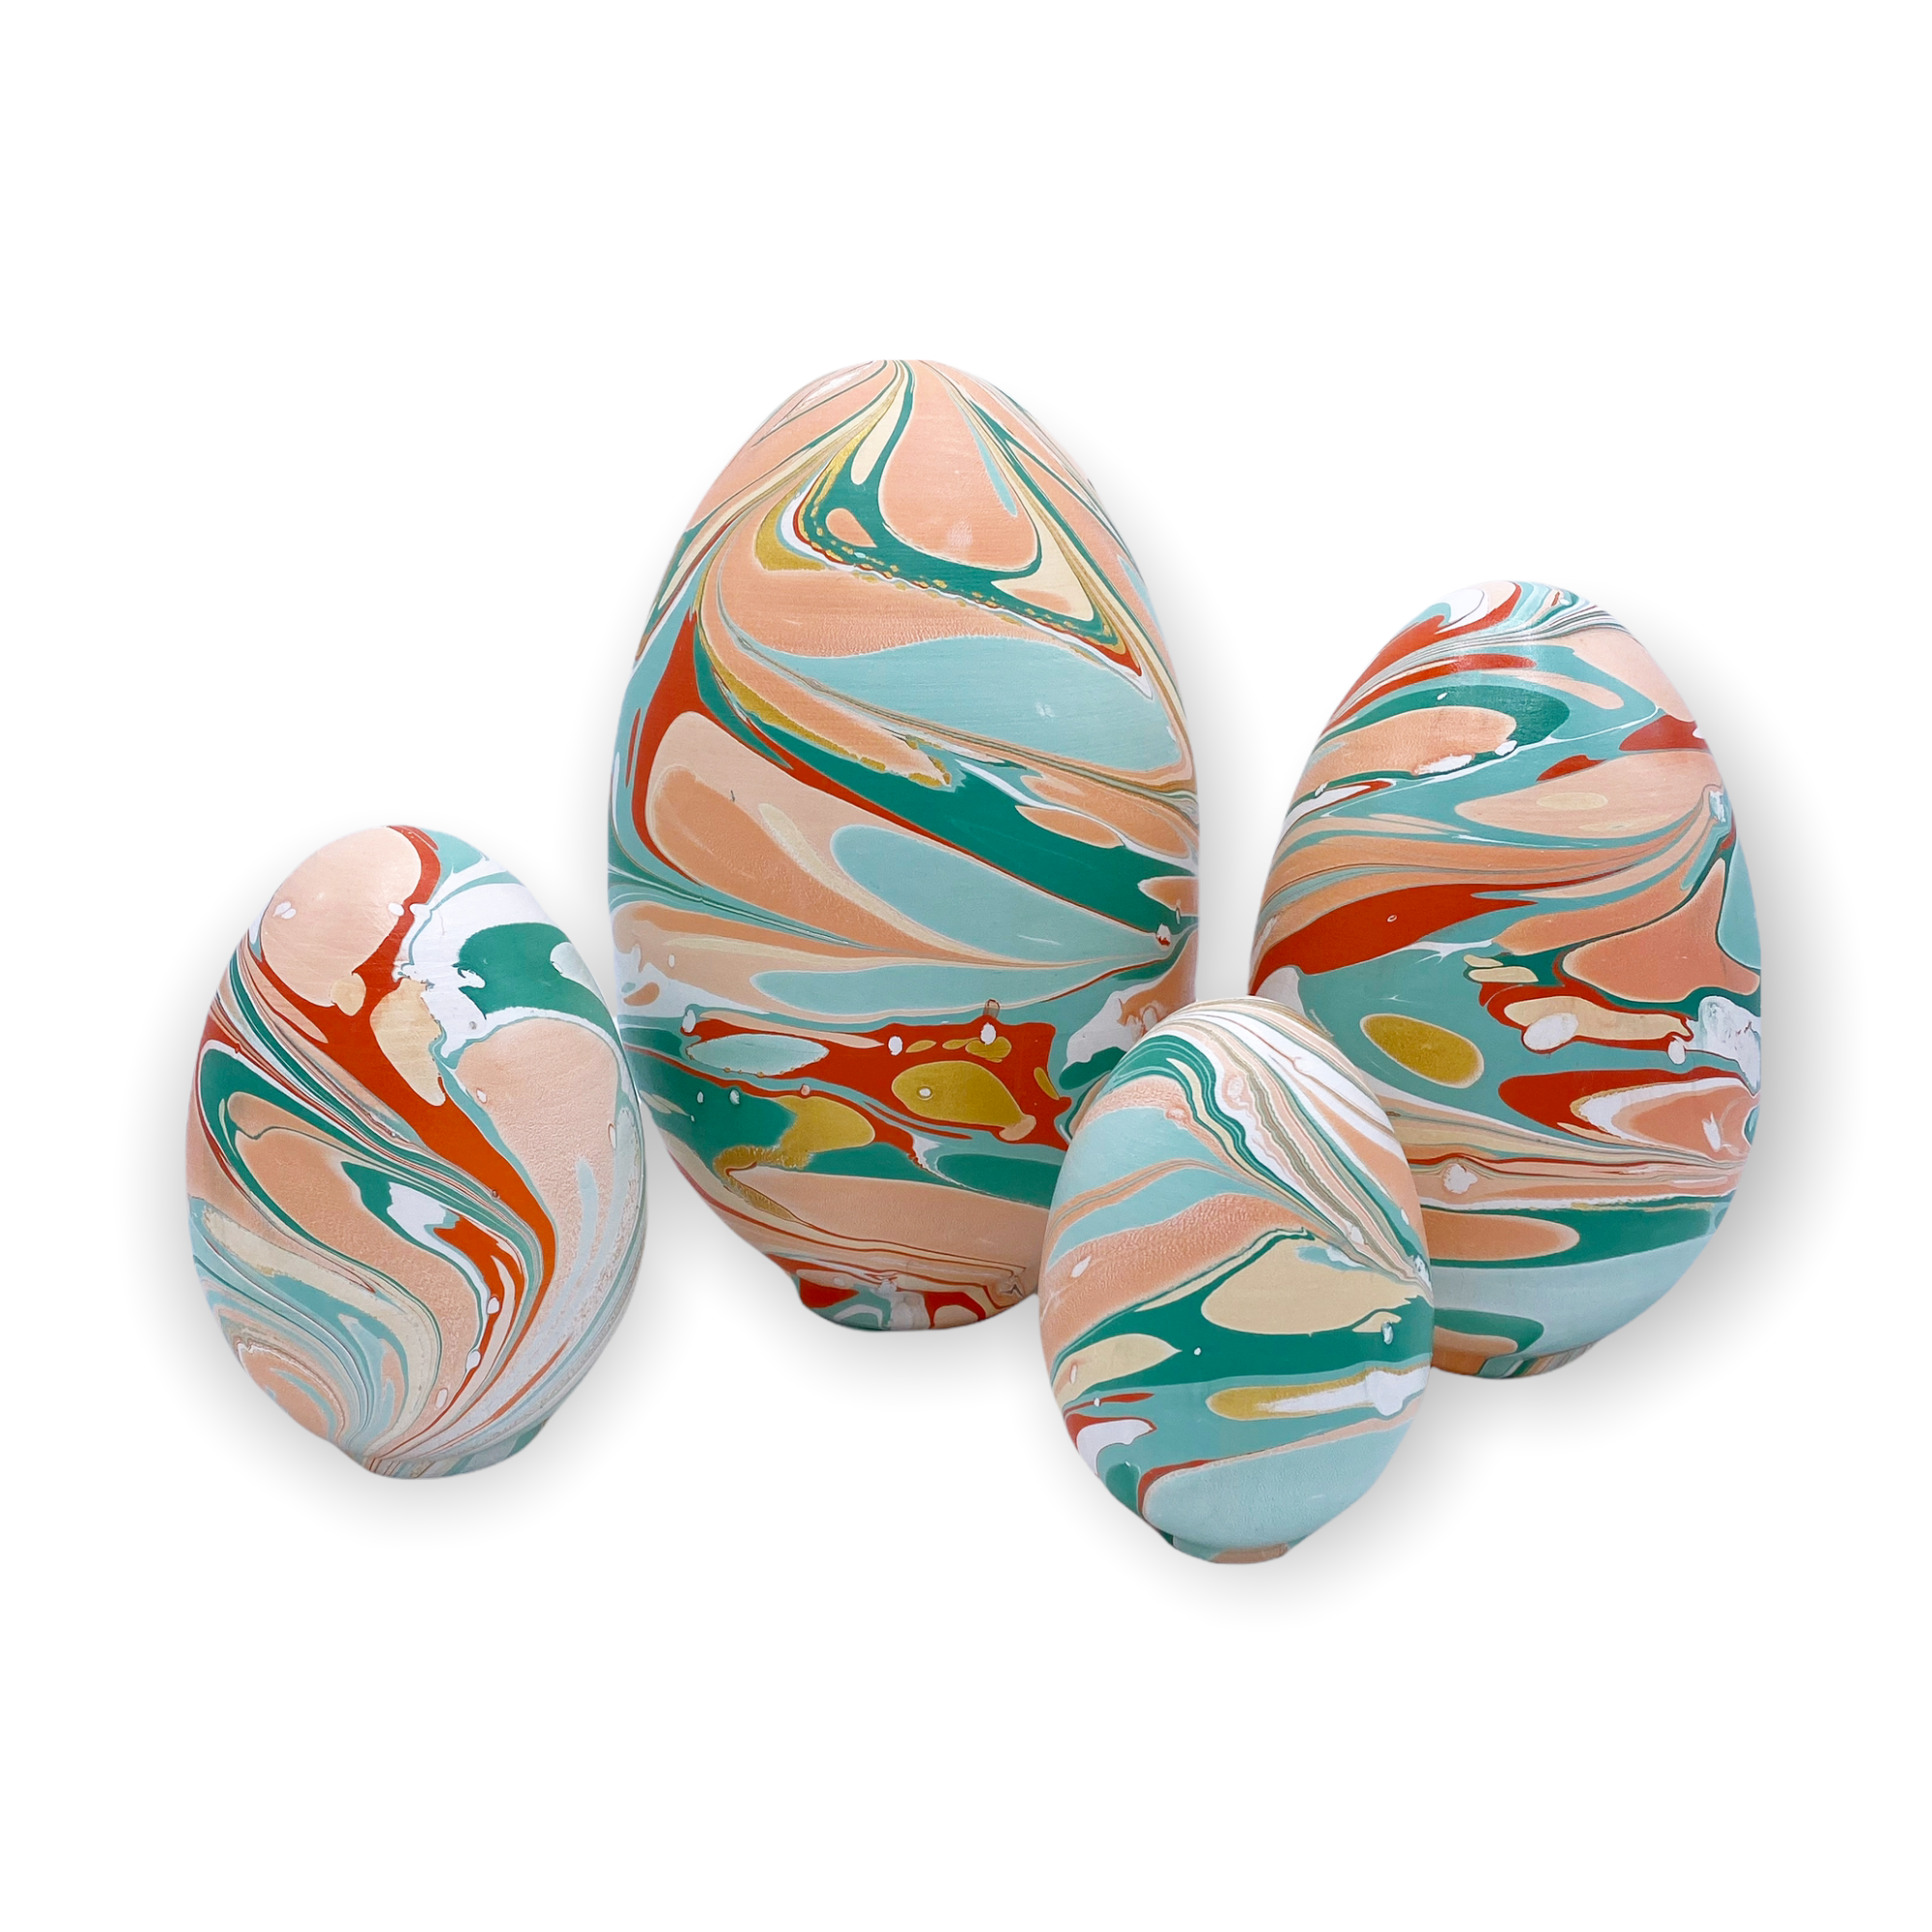 Peachy Keen Nesting Egg Set